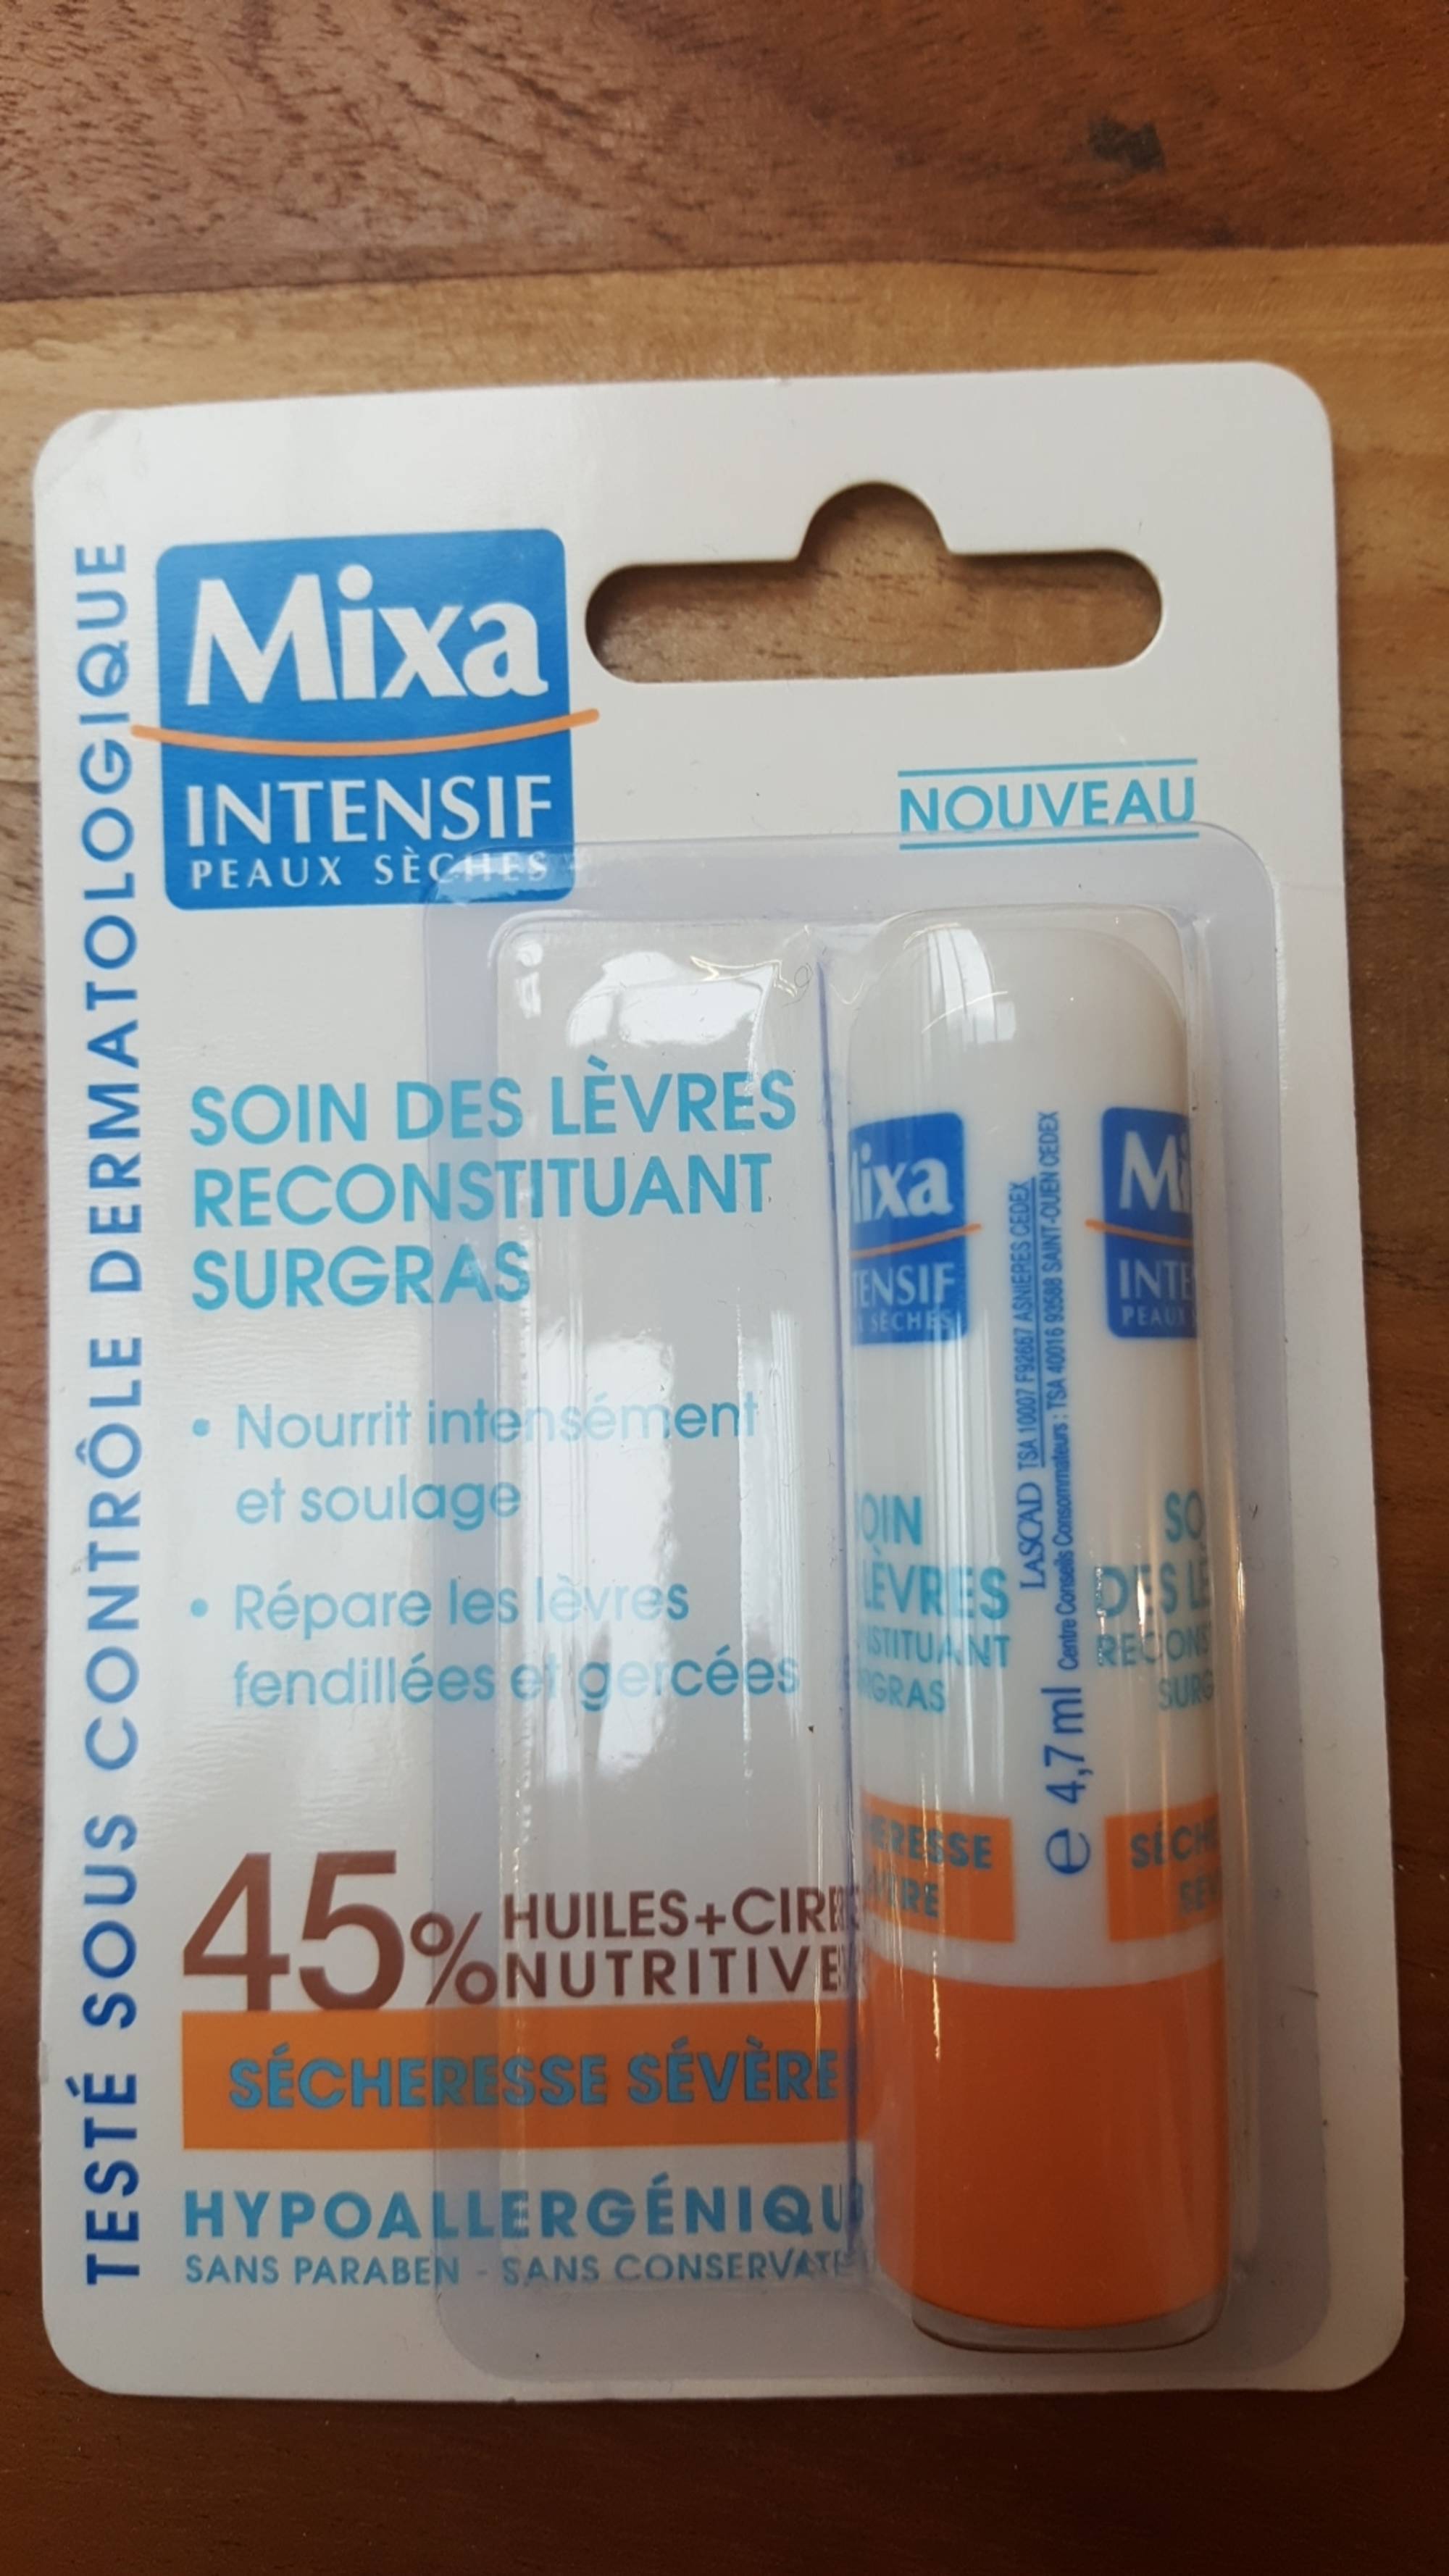 MIXA - Intensif peaux sèches - Soin des lèvres reconstituant surgras